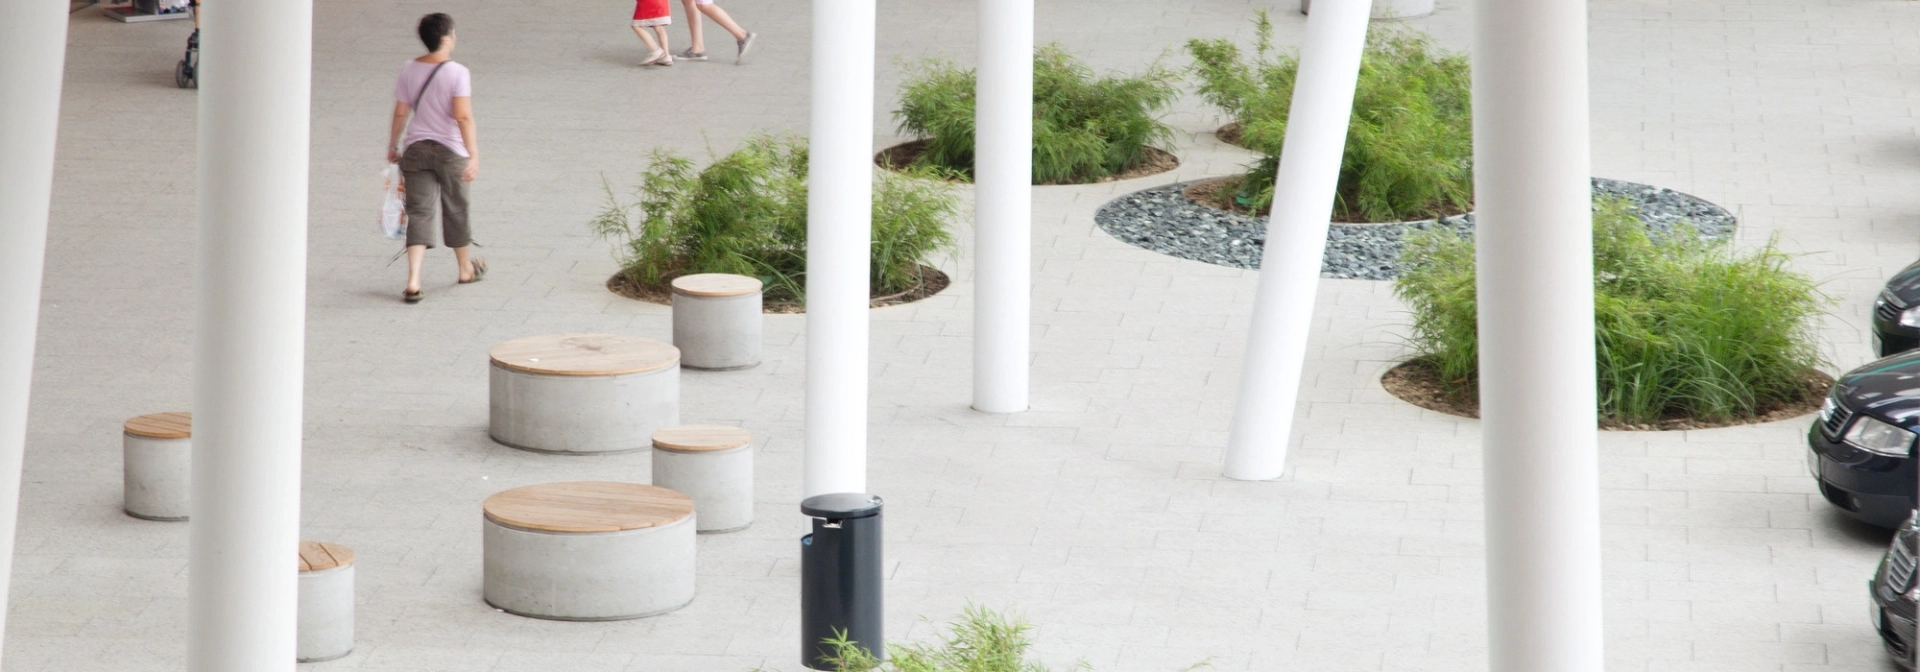 einkaufszentrum plaza bepflanzt modern